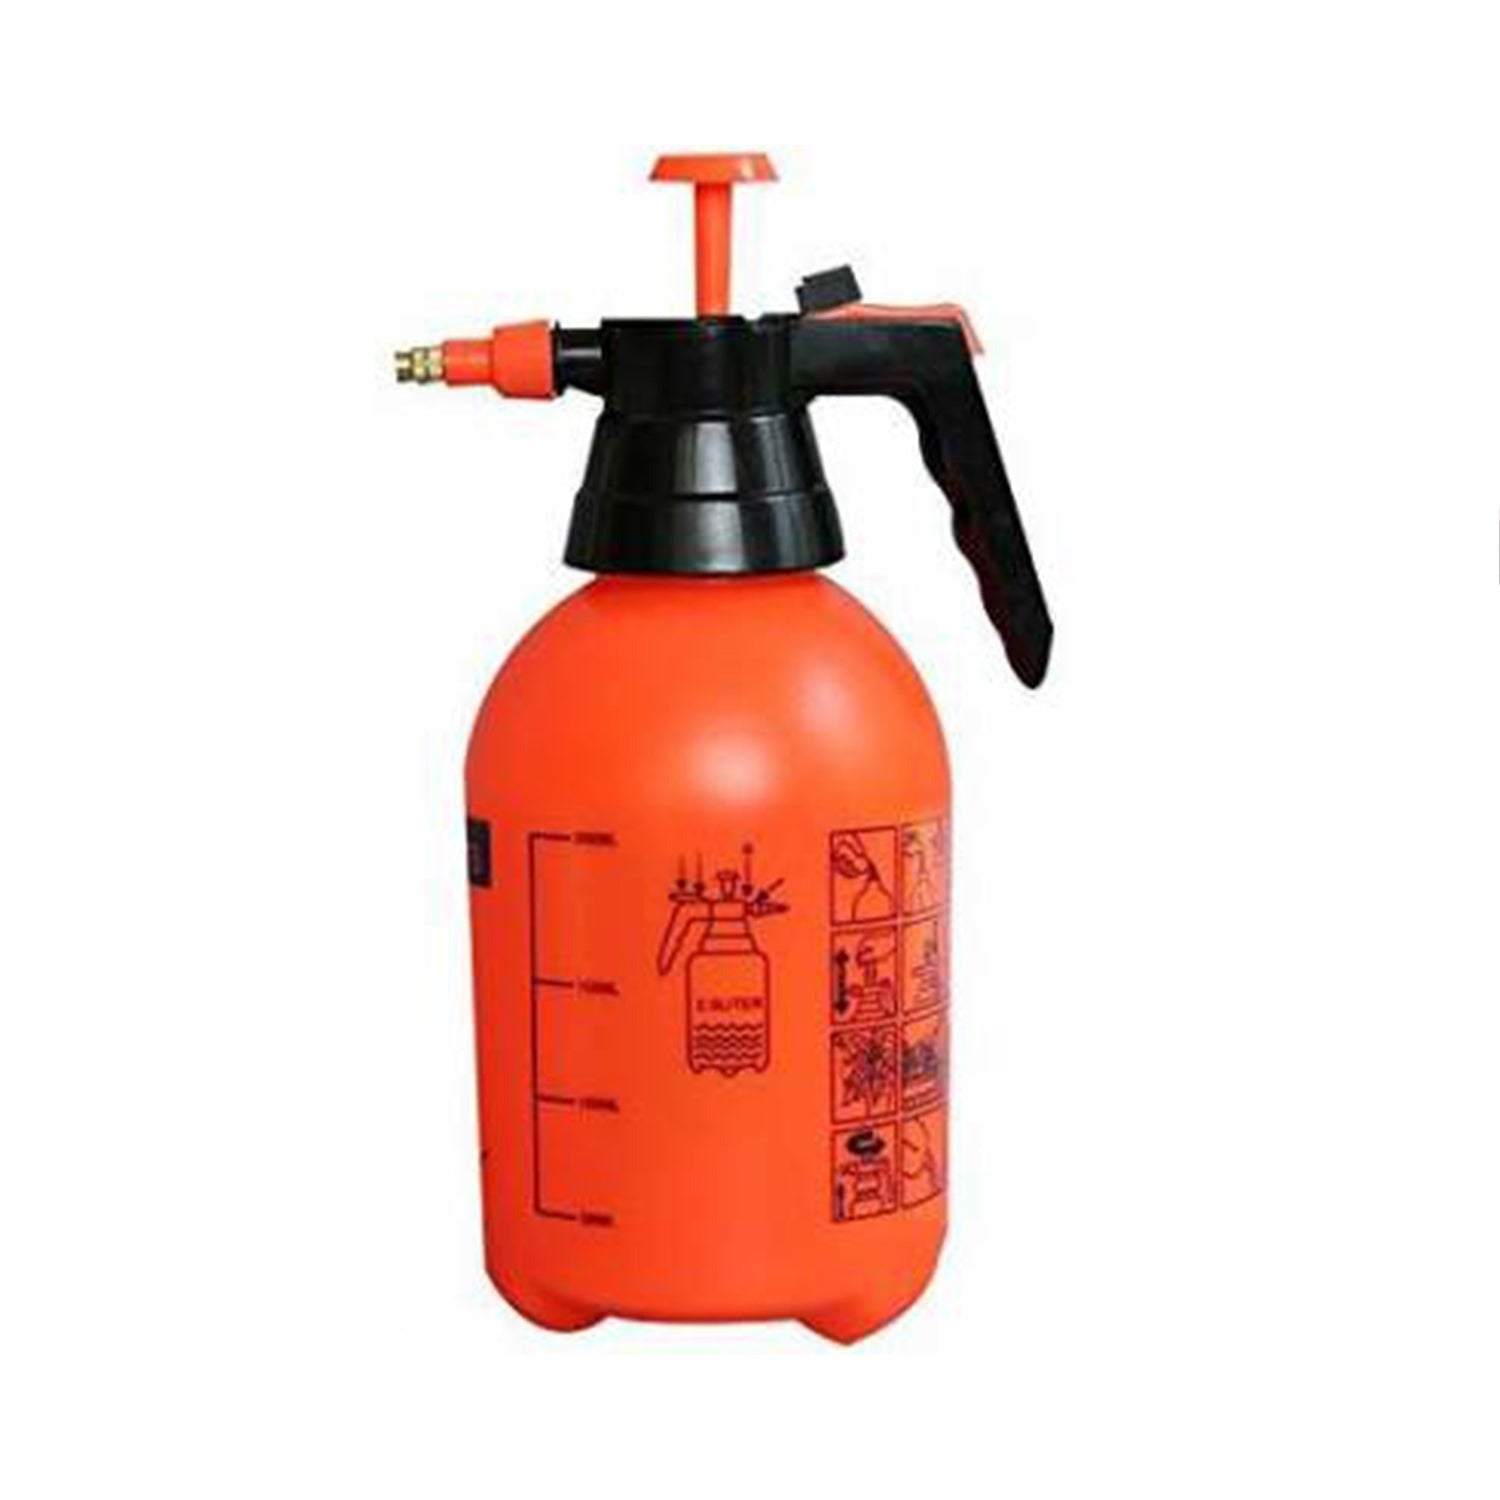 0645 Water Sprayer Hand-held Pump Pressure Garden Sprayer - 2 L 